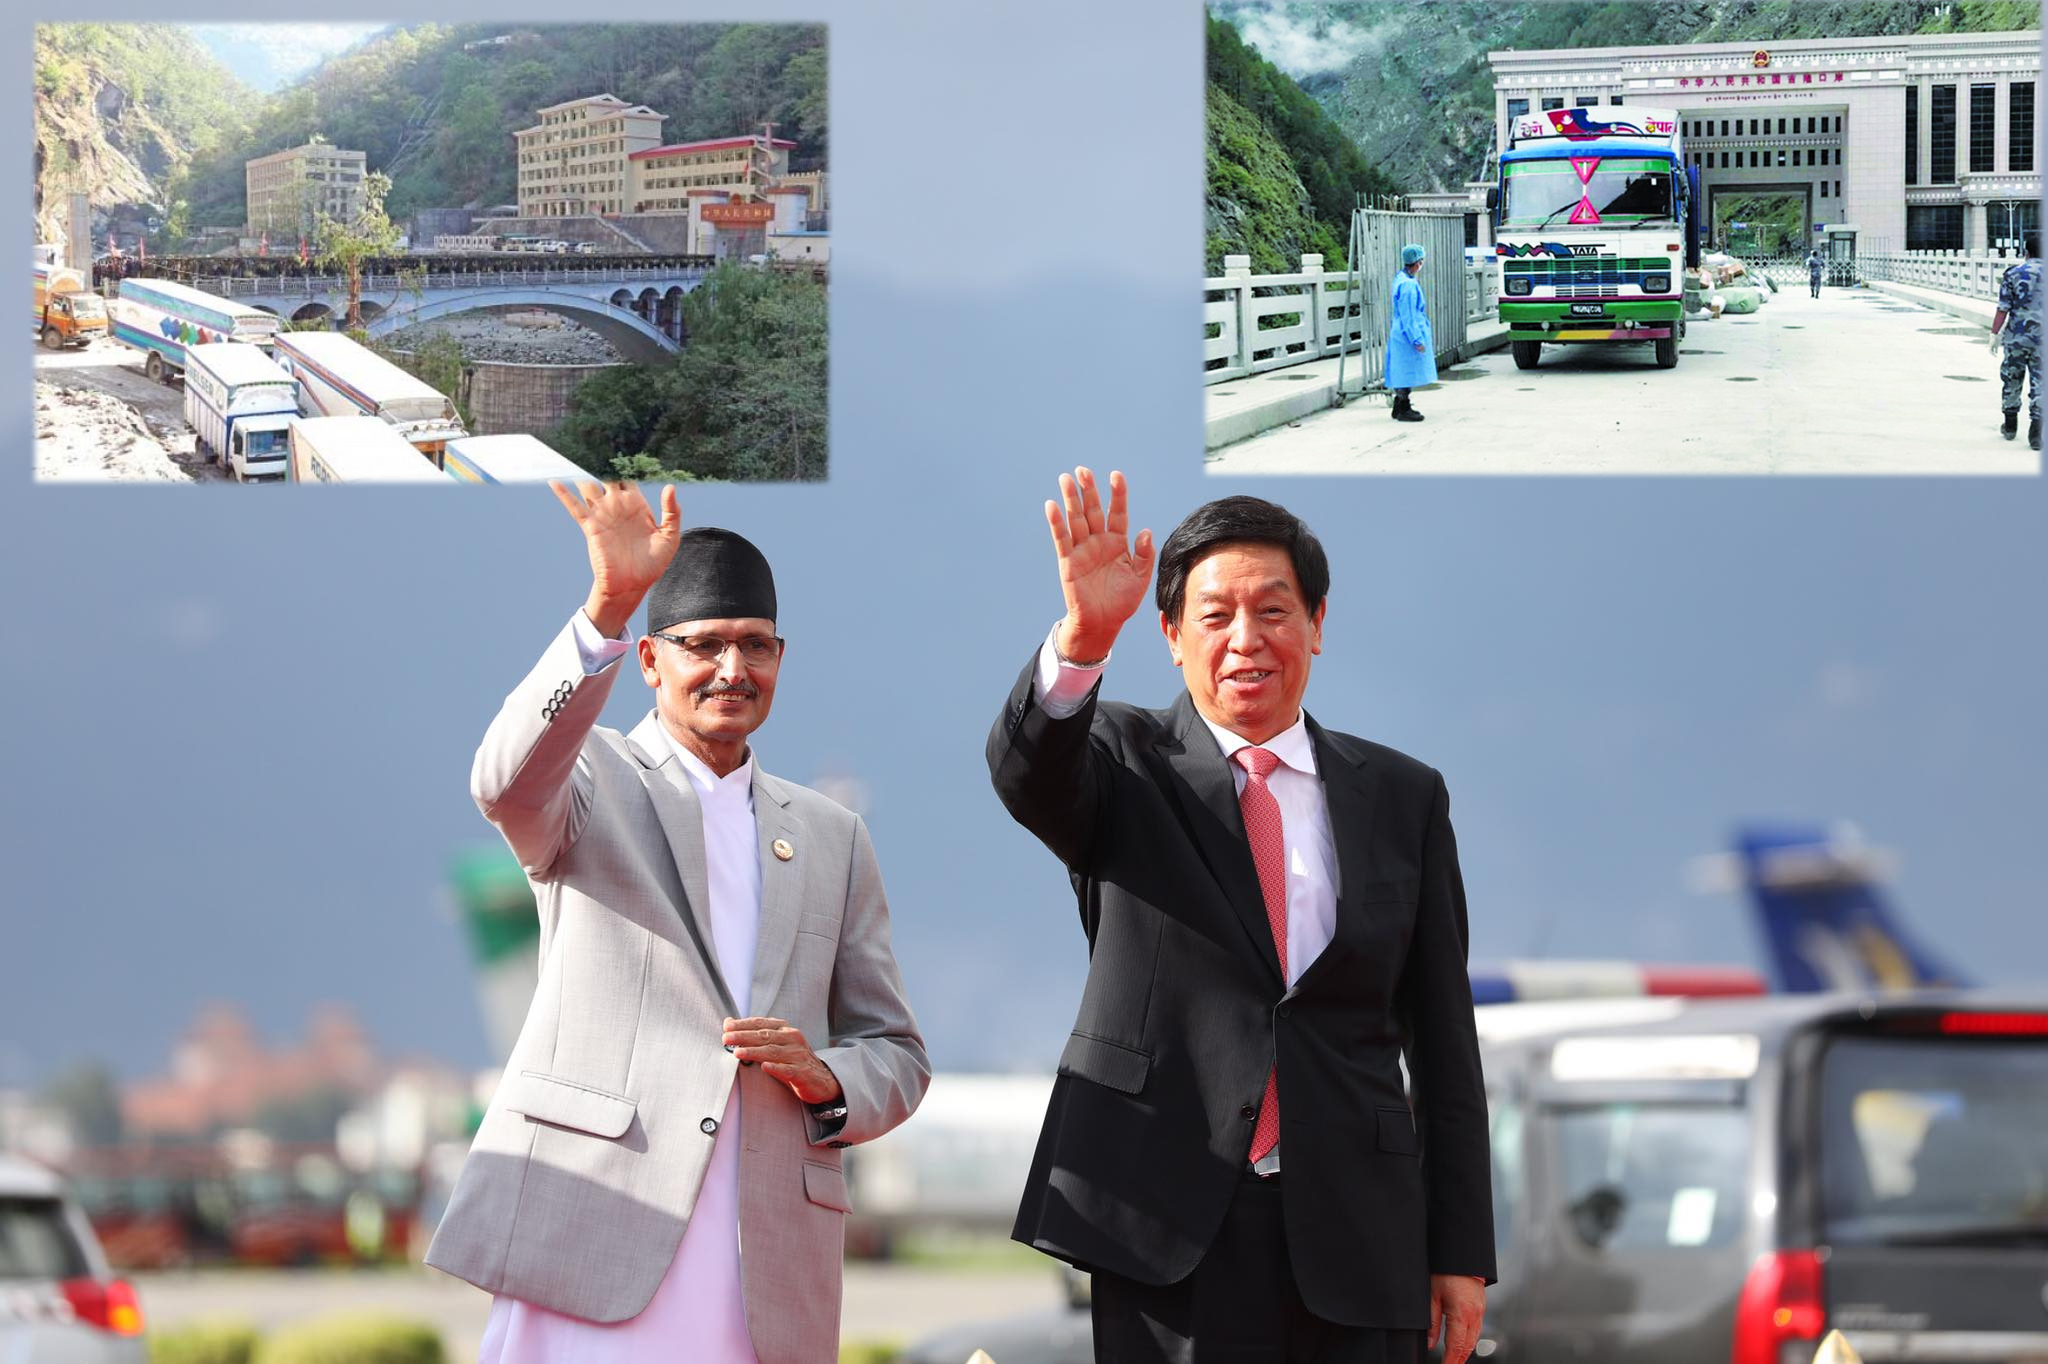 अध्यक्ष लीले खुलाए तातोपानी र रसुवा नाका, एक महिनापछि १४ कन्टेनर सामान बोकेर नेपाल आयो